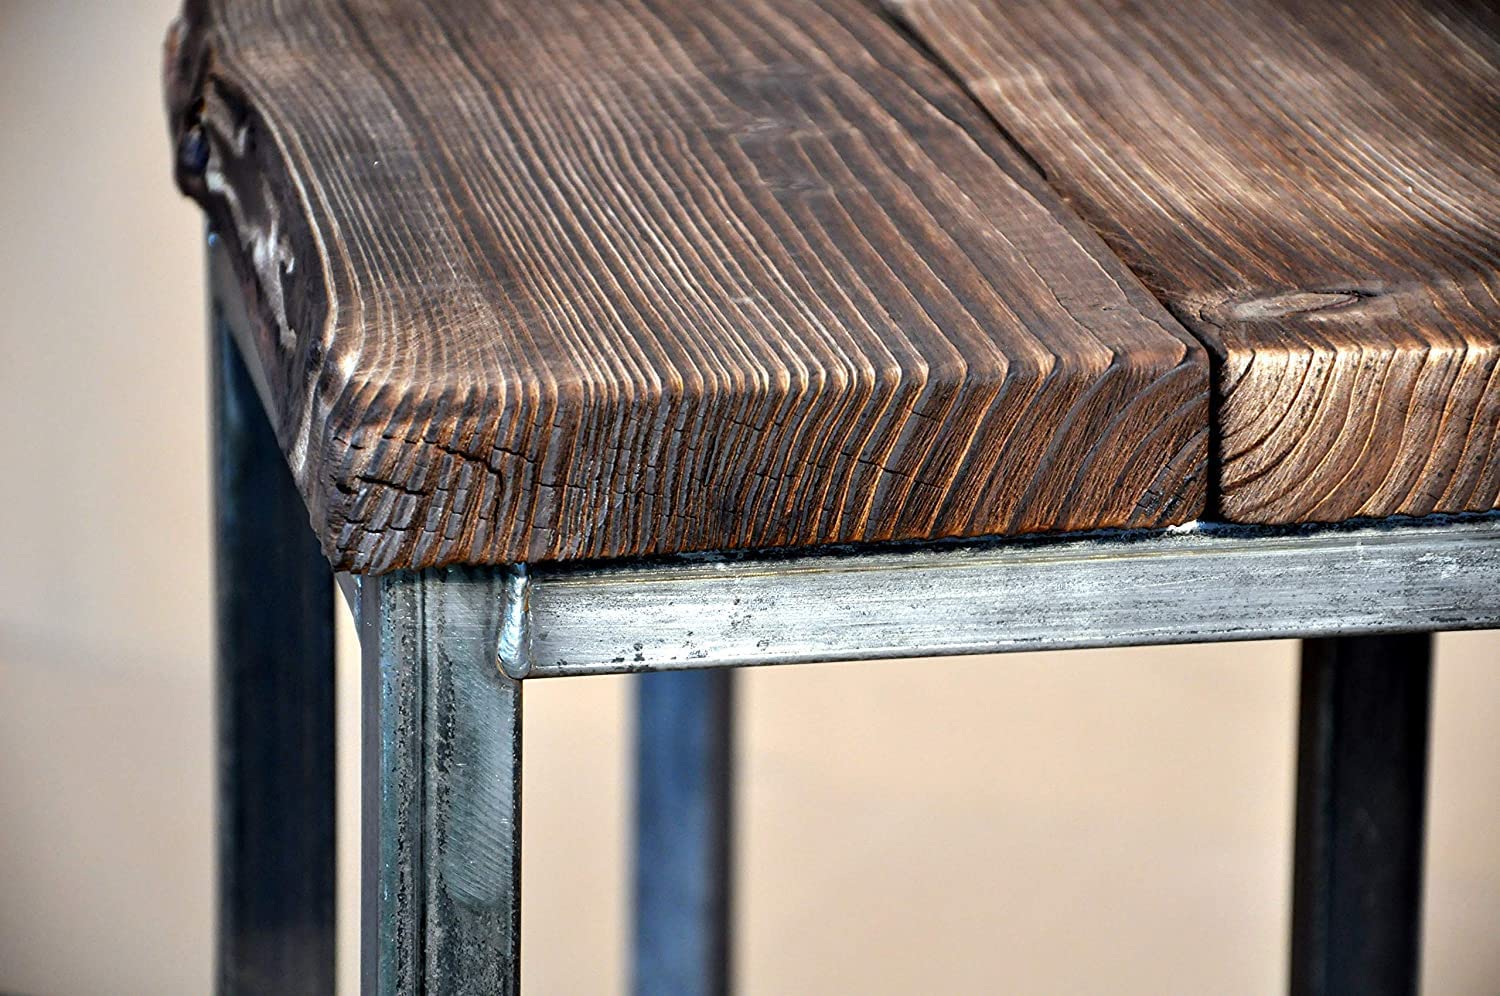 CHYRKA® Bartisch Barhocker LS Stehtisch SAMBOR BarMöbel Loft Vintage Bar Industrie Design Handmade Holz Metall